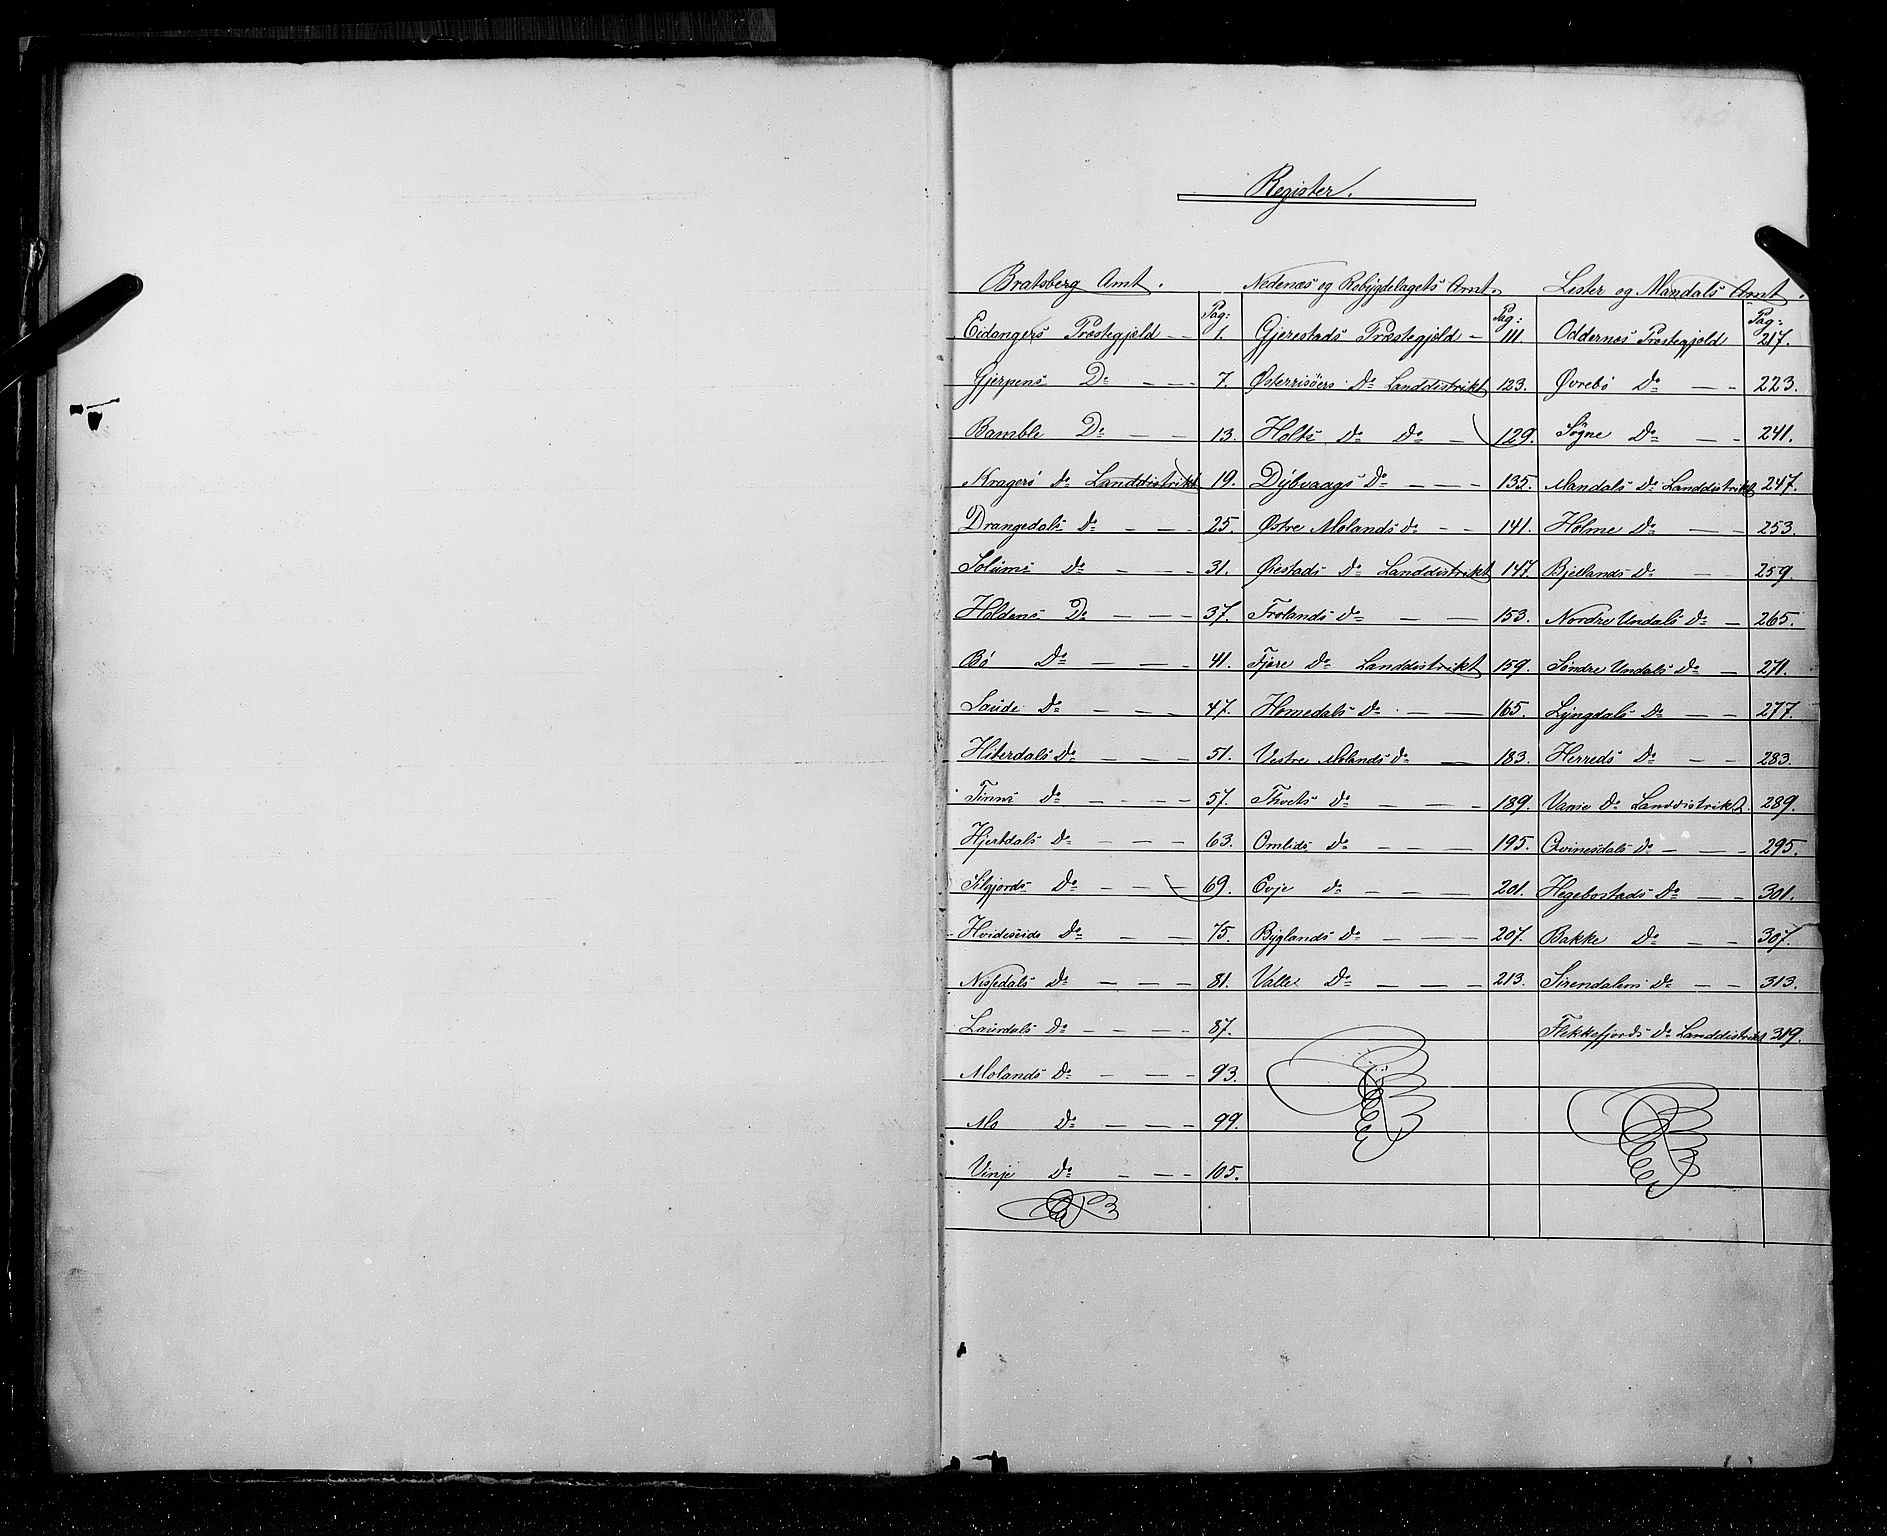 RA, Census 1855, vol. 3: Bratsberg amt, Nedenes amt og Lister og Mandal amt, 1855